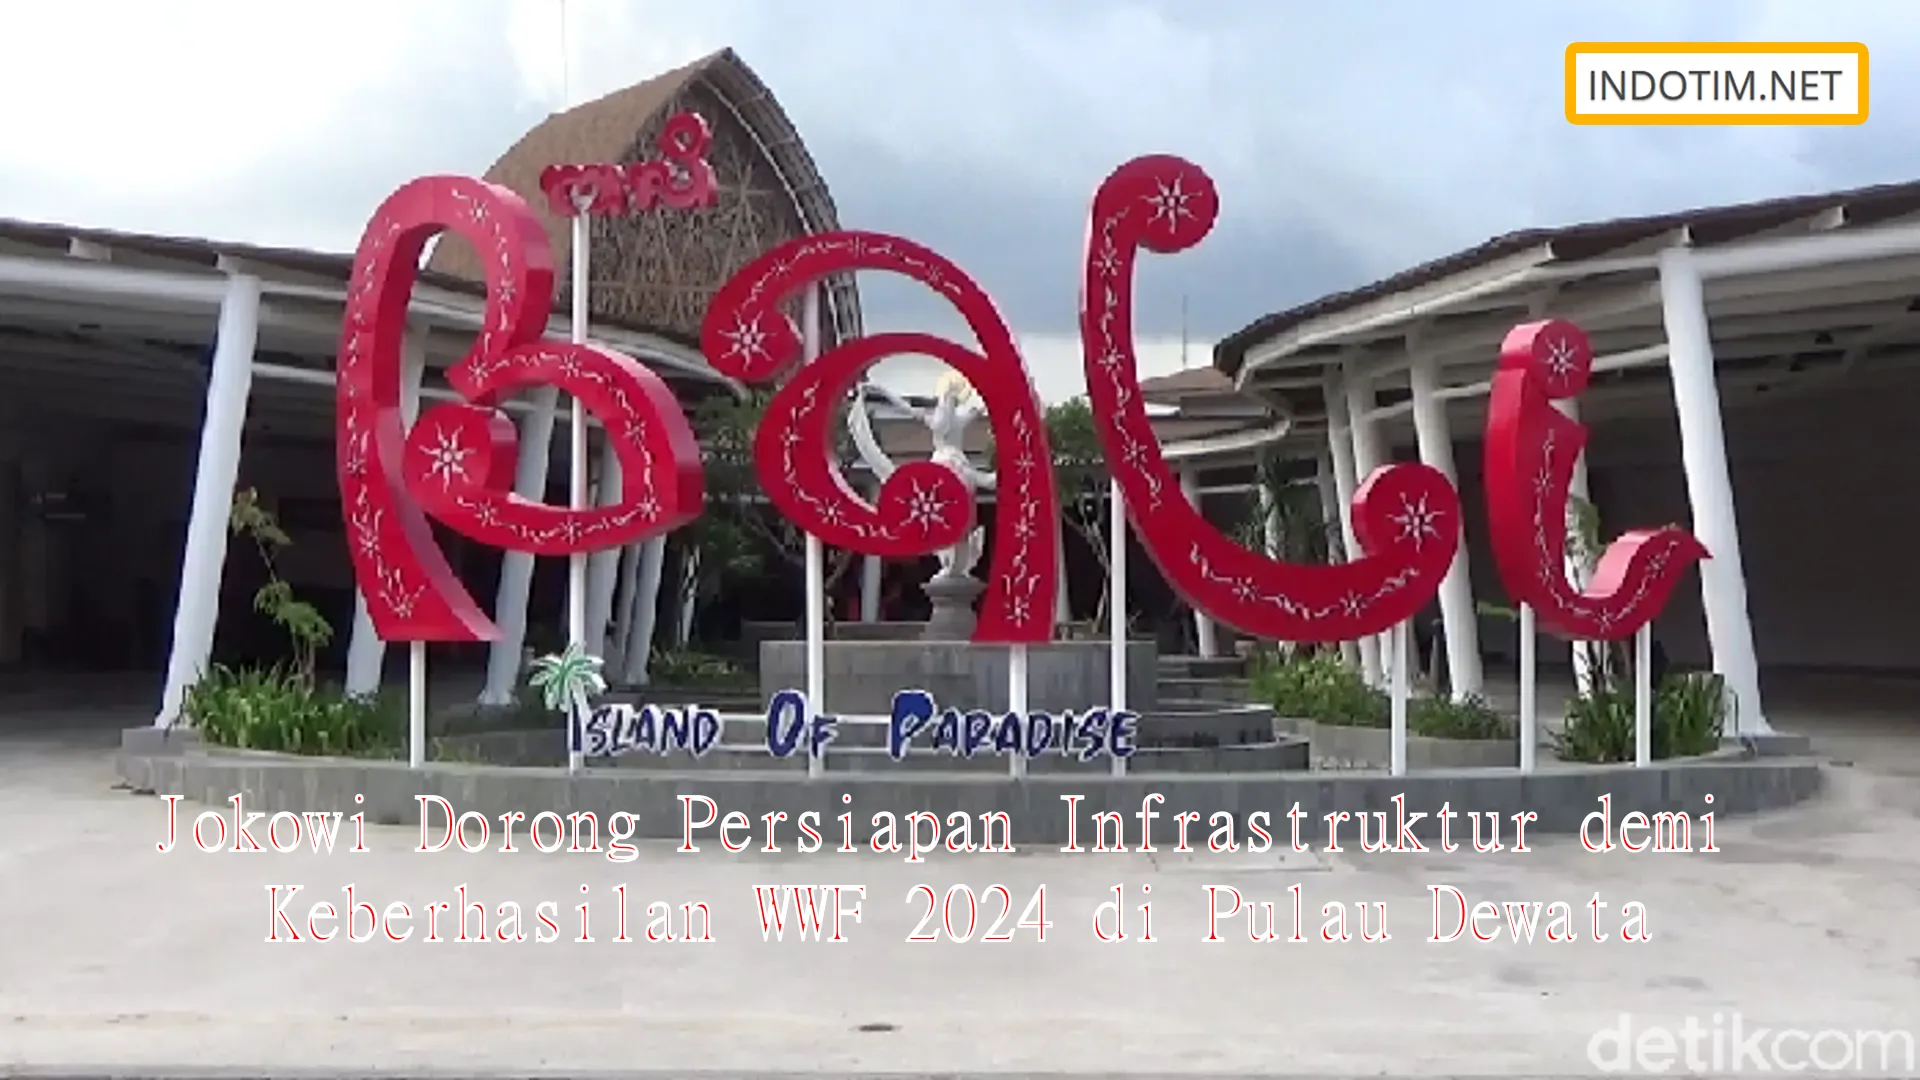 Jokowi Dorong Persiapan Infrastruktur demi Keberhasilan WWF 2024 di Pulau Dewata